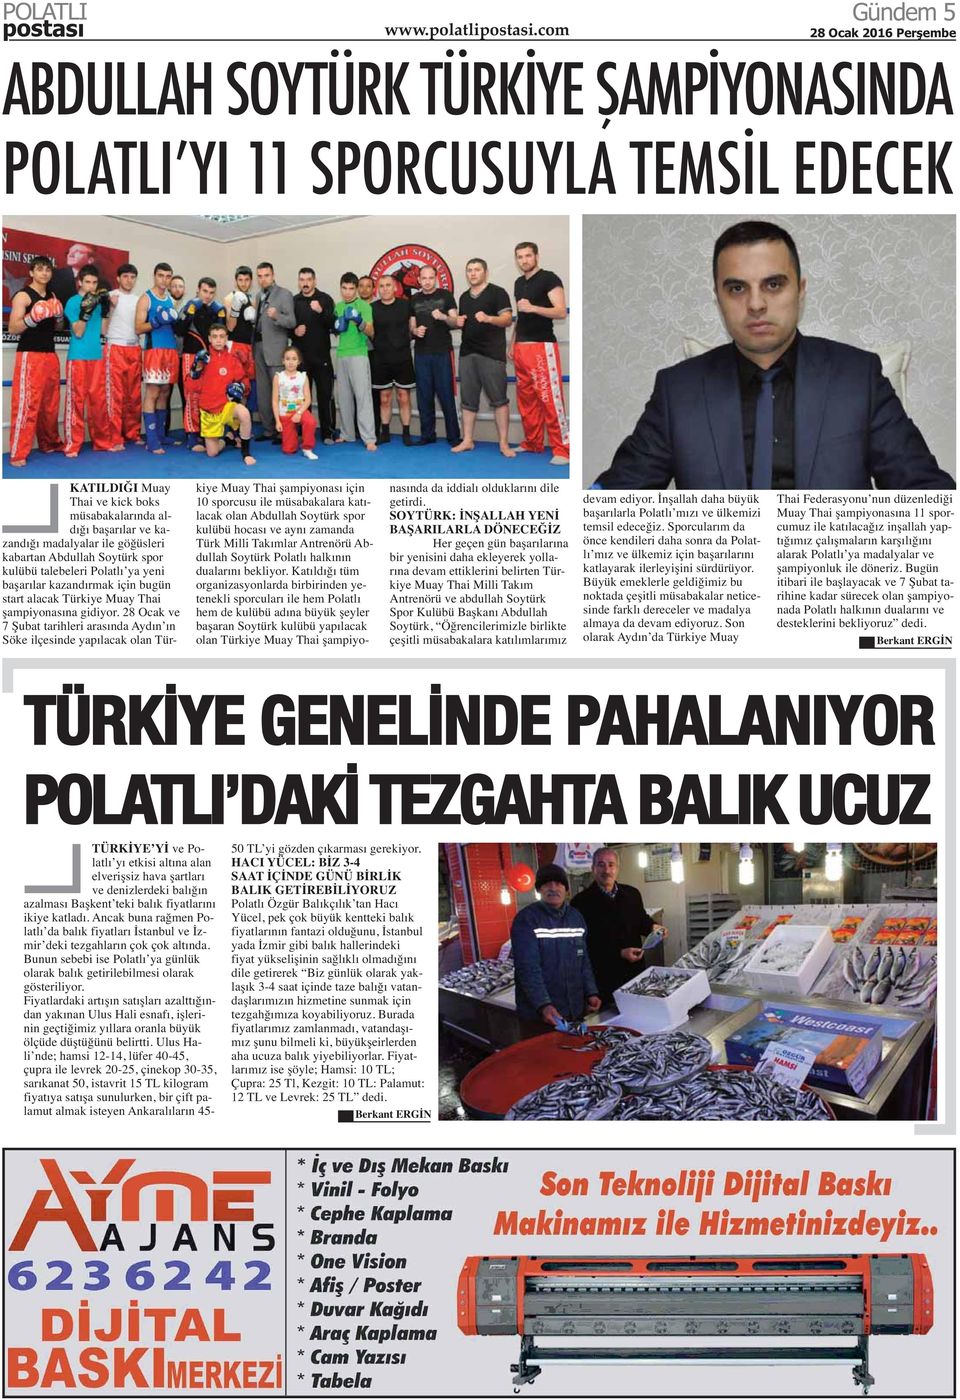 28 Ocak ve 7 Şubat tarihleri arasında Aydın ın Söke ilçesinde yapılacak olan Türkiye Muay Thai şampiyonası için 10 sporcusu ile müsabakalara katılacak olan Abdullah Soytürk spor kulübü hocası ve aynı